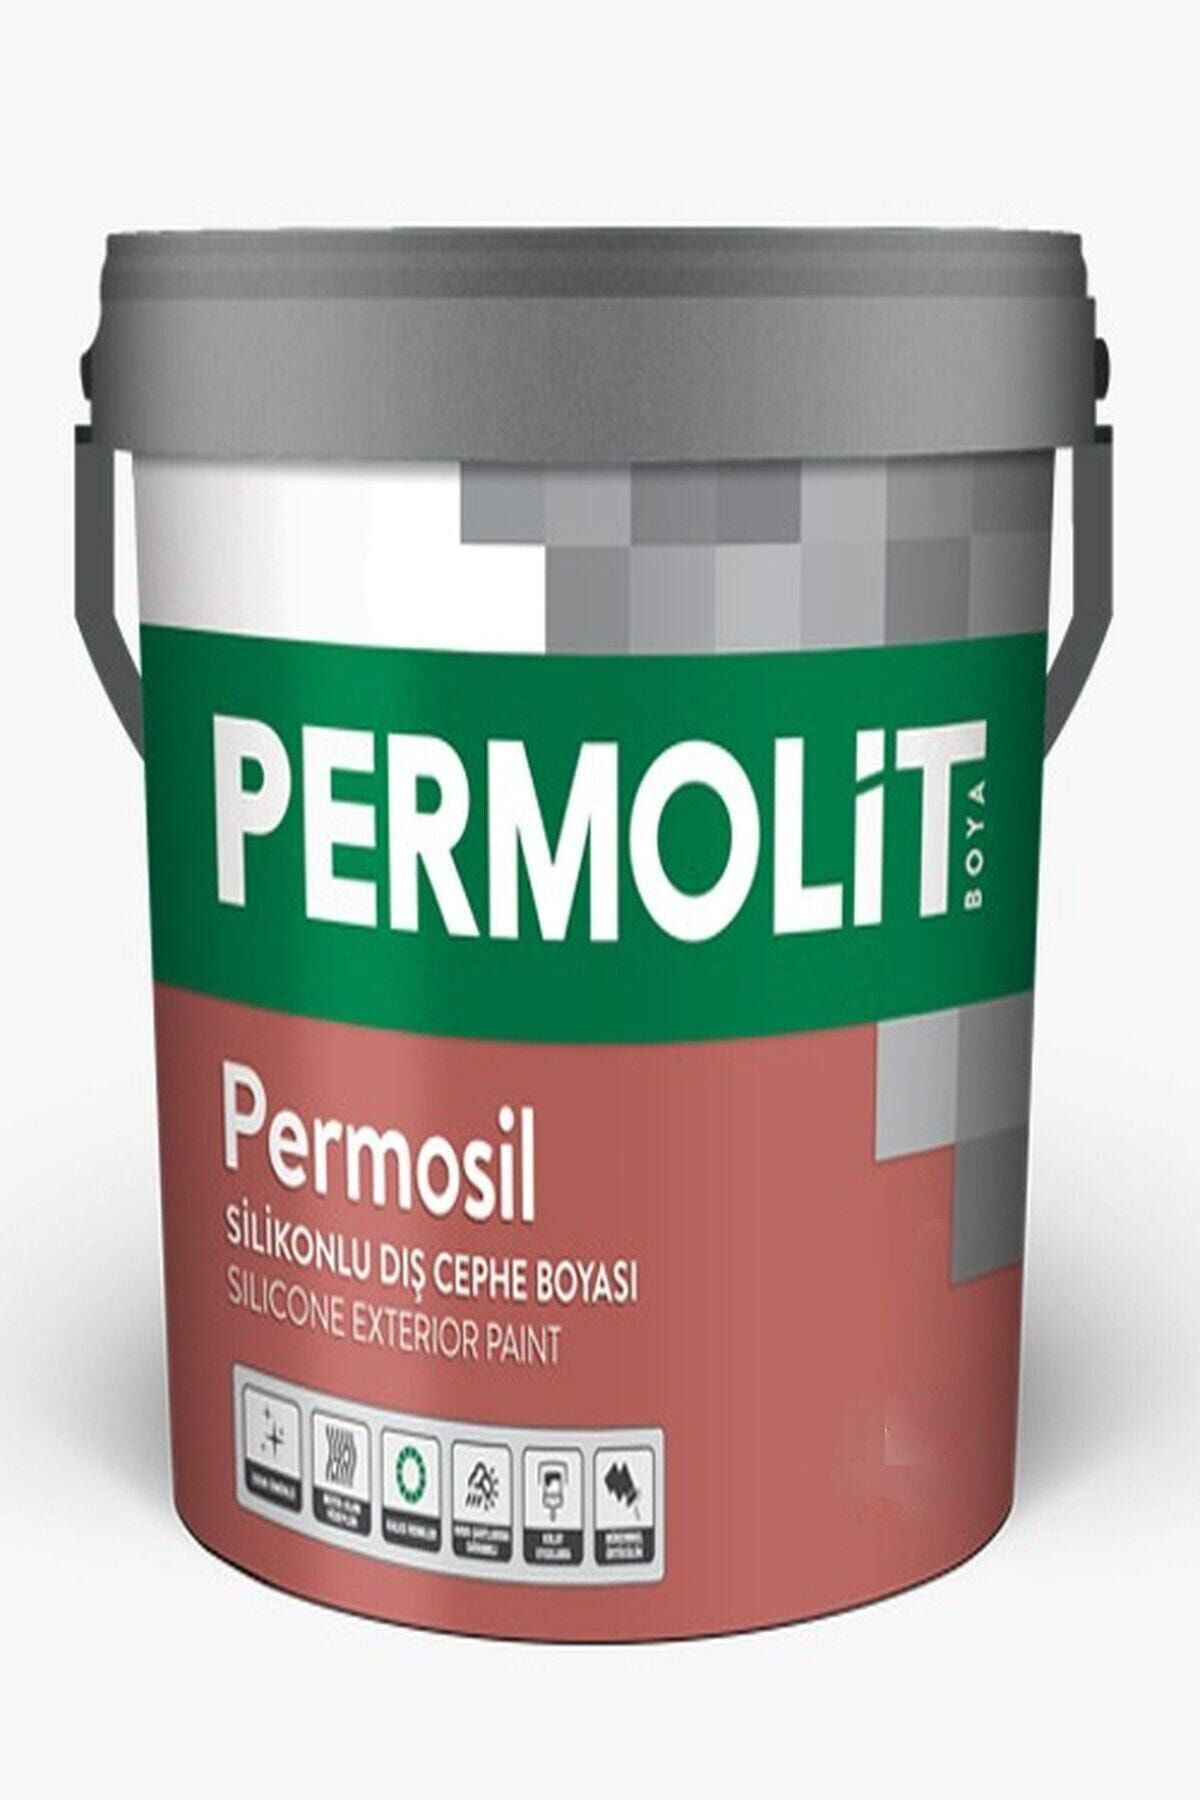 Permolit Permosil Silikonlu Dış Cephe Boyası Açık Krem